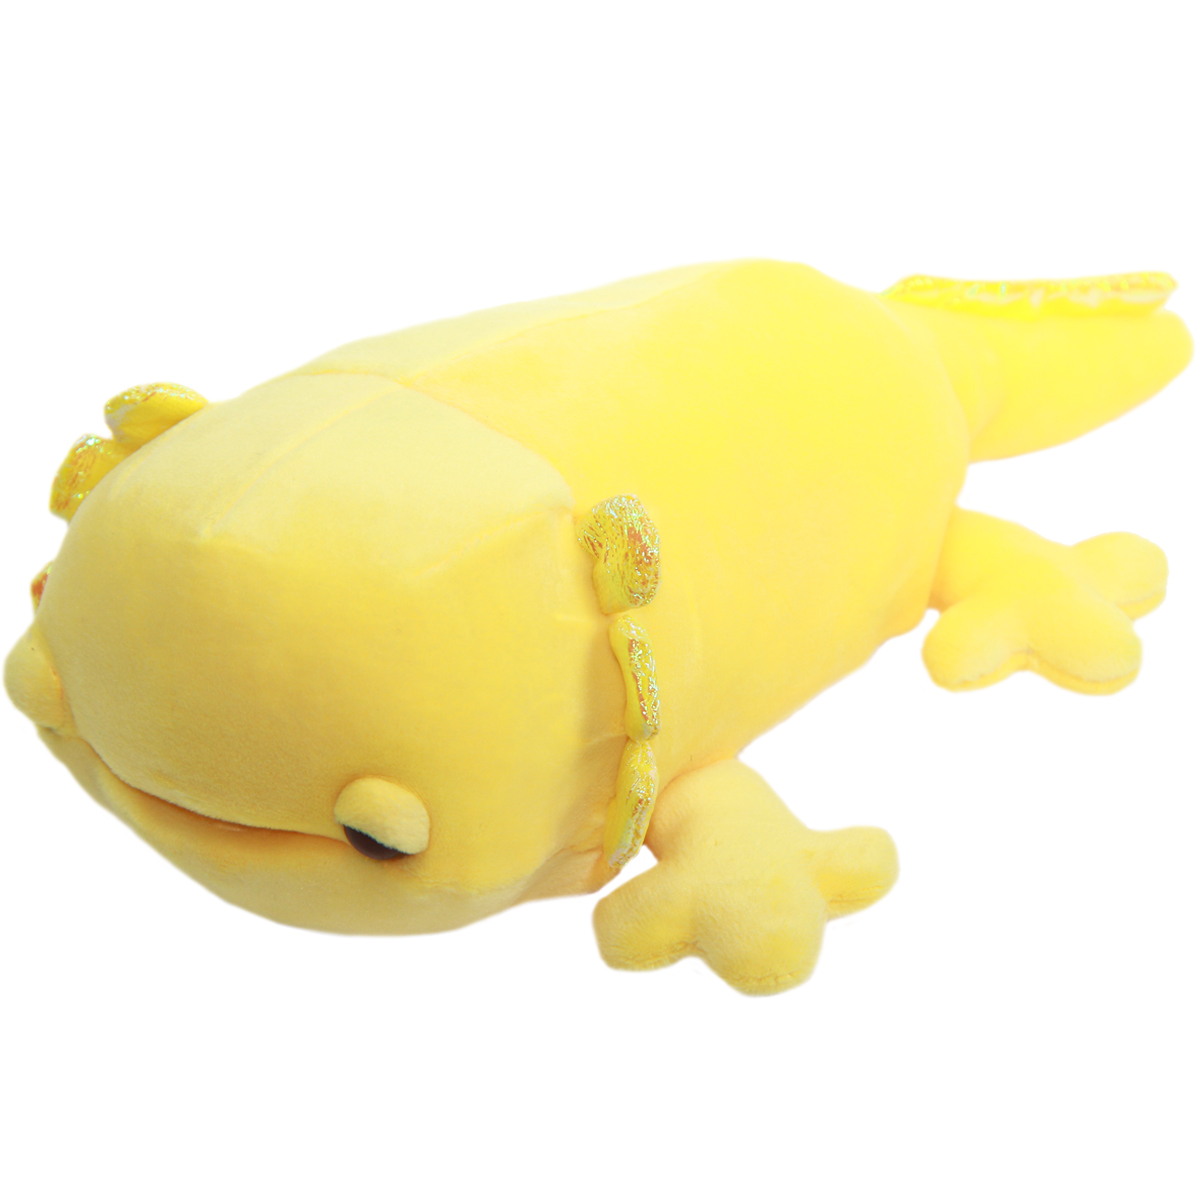 yellow stuffed animal